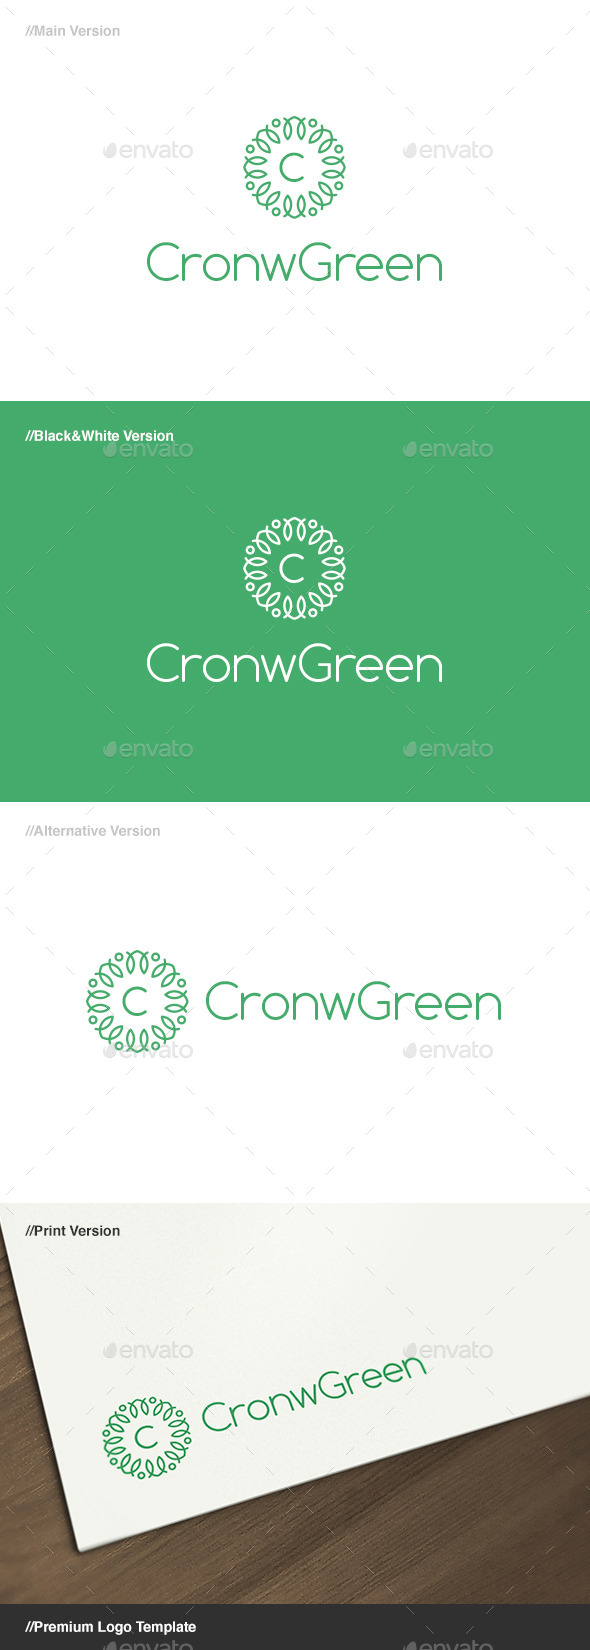 Crown Green Logo